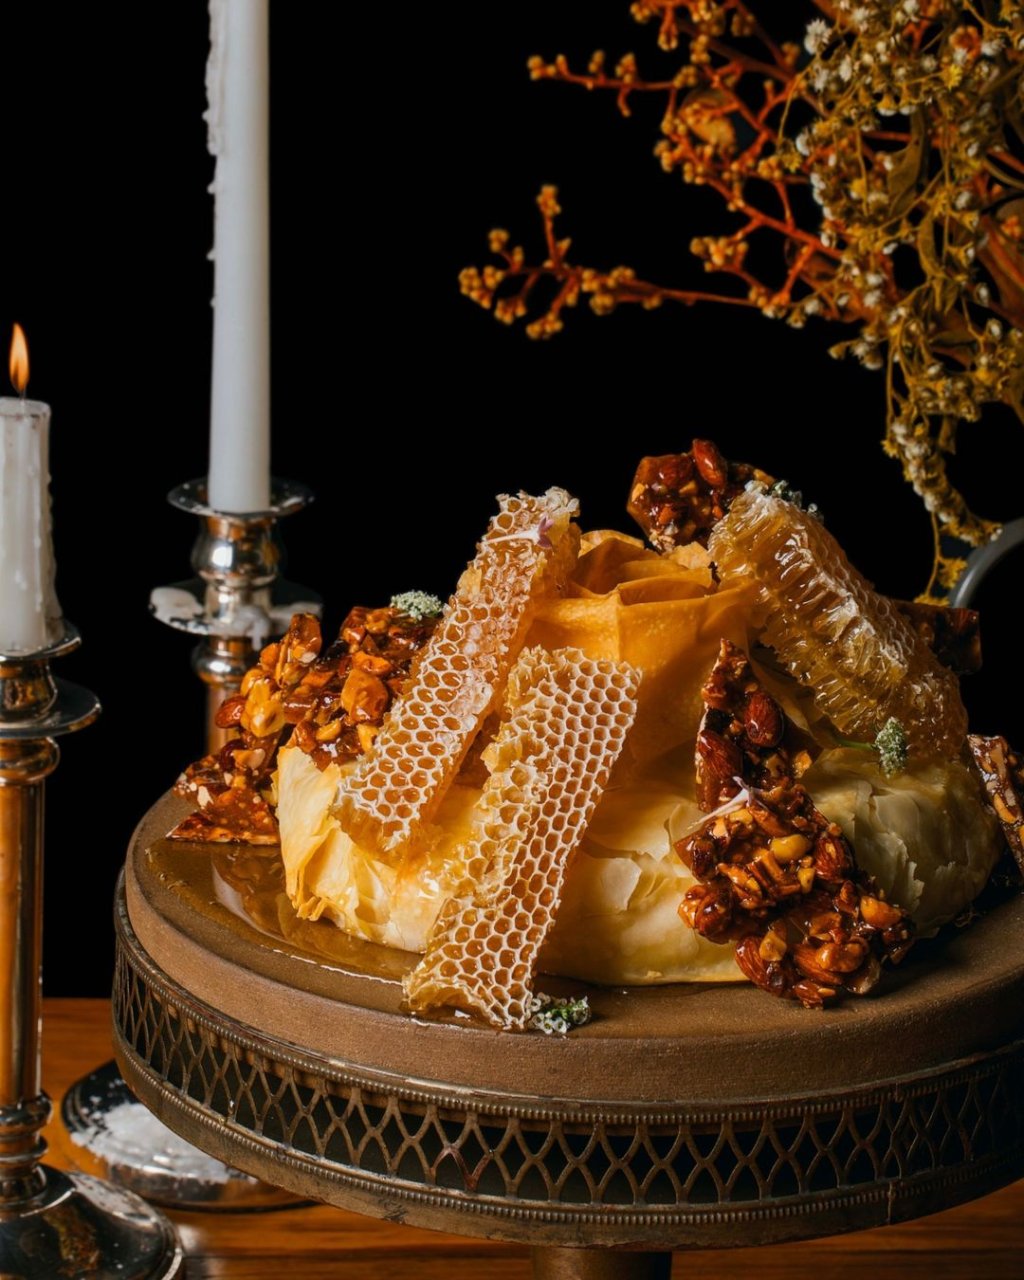 Queijo brie folhado com praliné de nuts e favo de mel, do La Cura